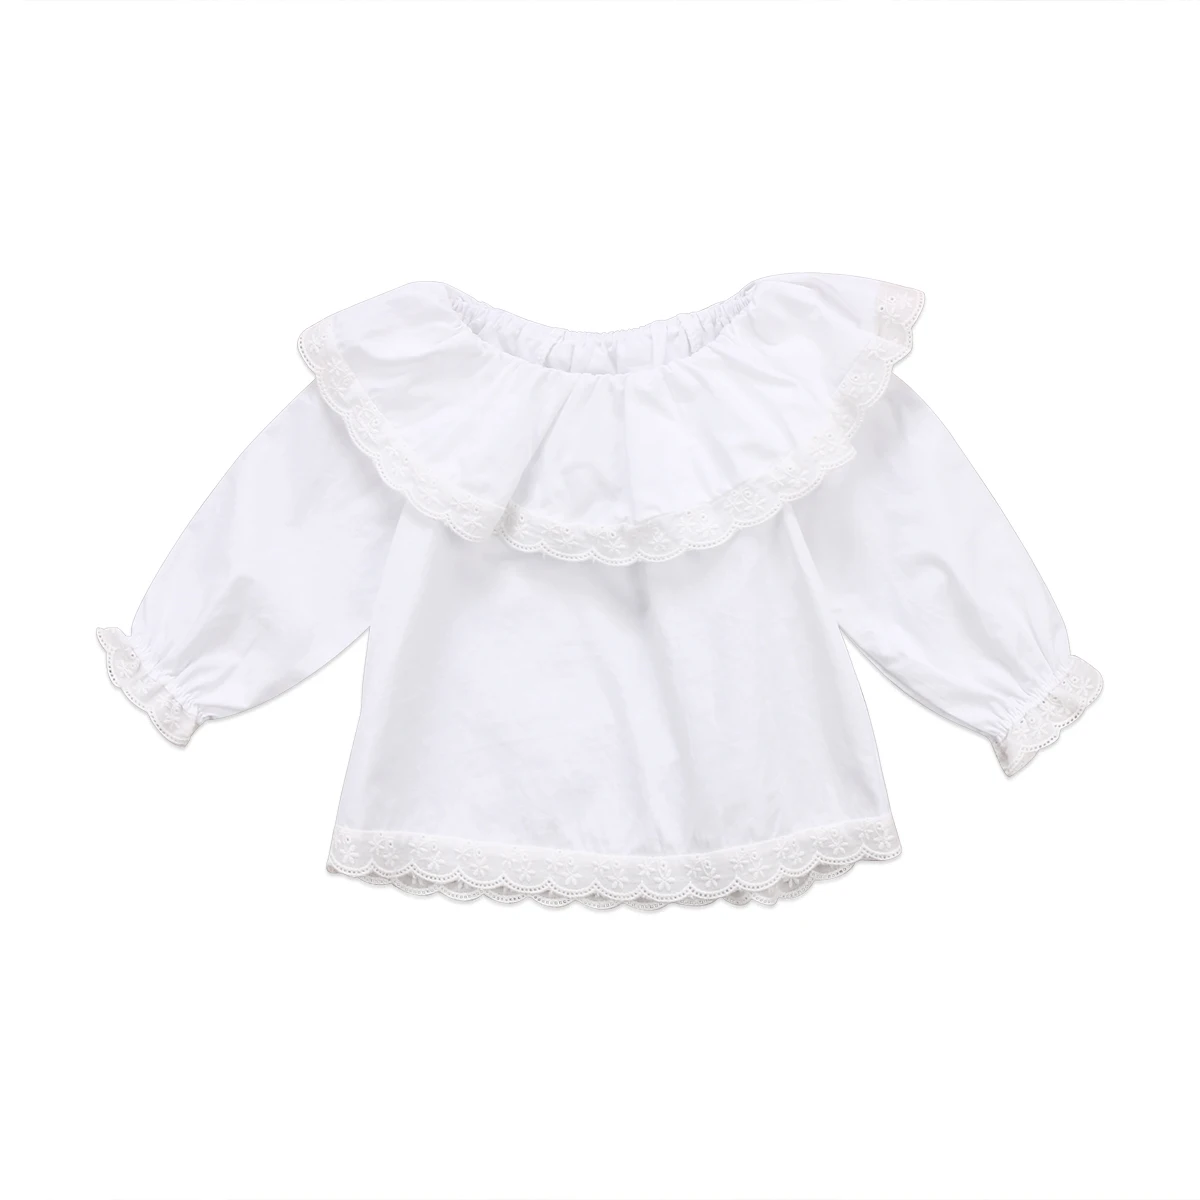 Красивая кружевная футболка принцессы футболка с длинными рукавами и воротником Одежда для новорожденных девочек - Цвет: Белый